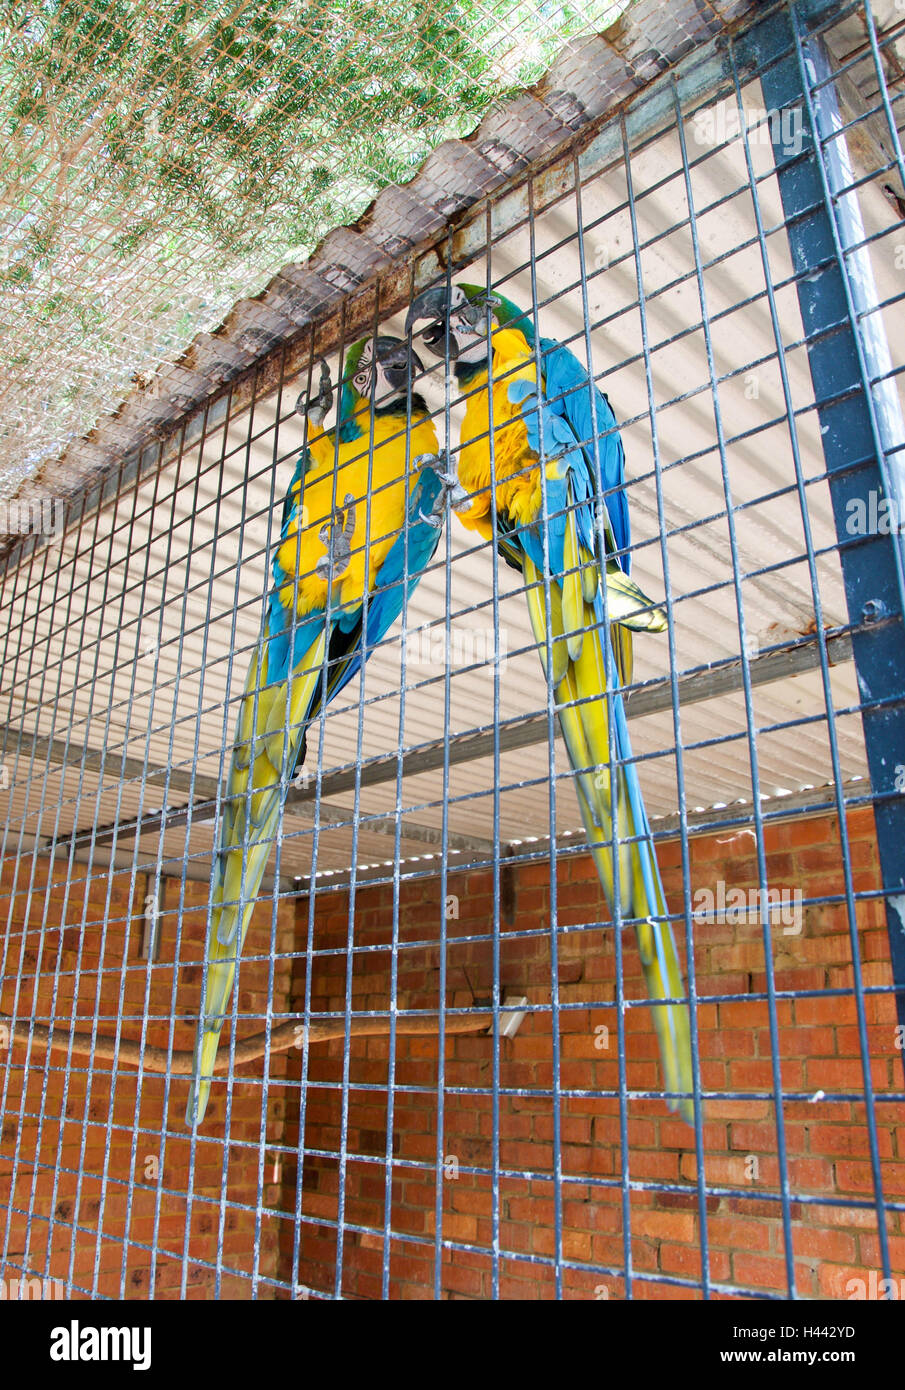 Zwei im Käfig blau-gelbe Ara Vögel mit ihren langen Schwanzfedern und  lebendige Gefieder Stockfotografie - Alamy